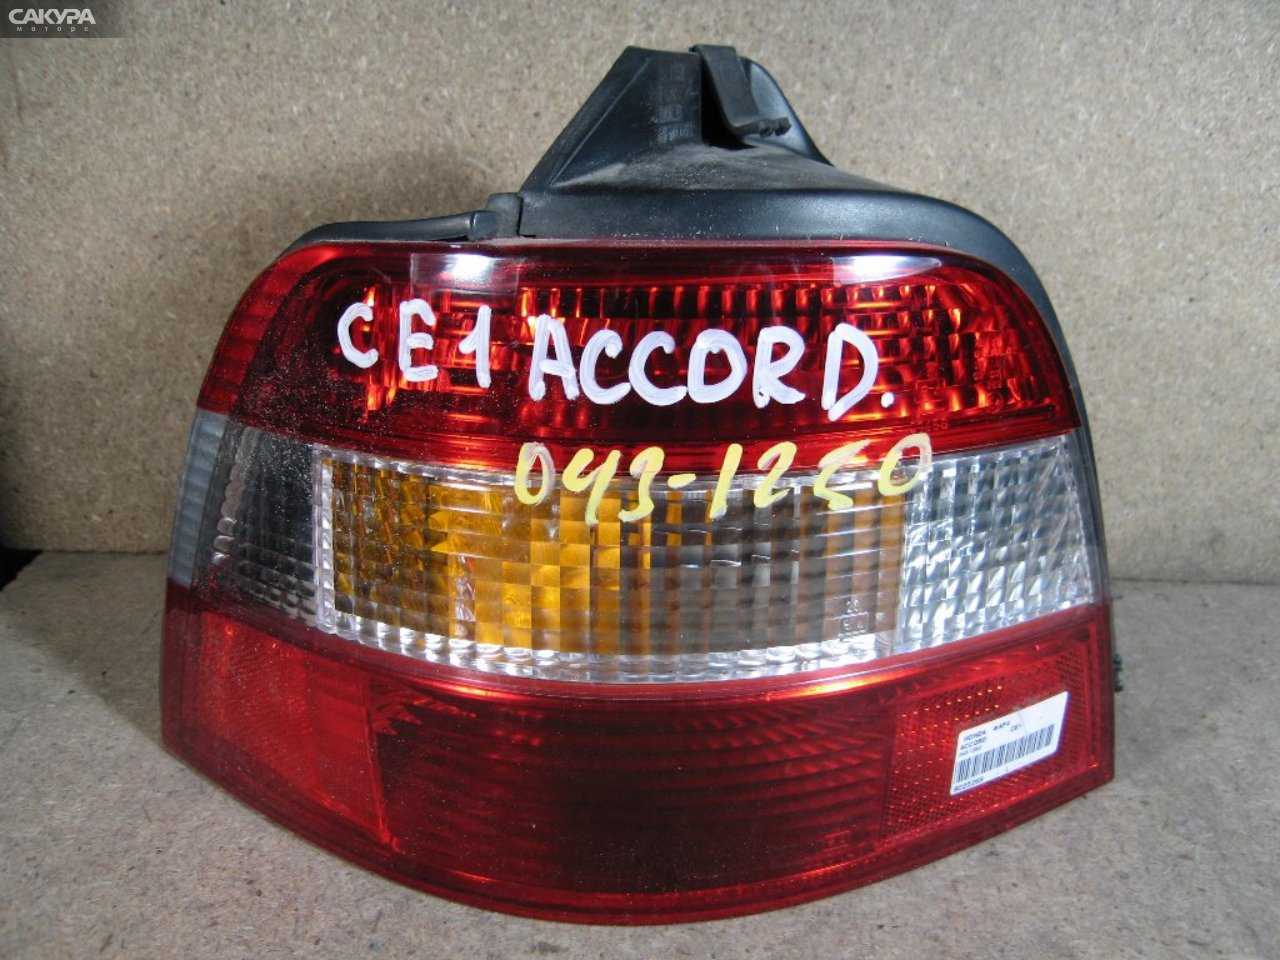 Фонарь стоп-сигнала левый Honda Accord Wagon CE1 043-1250: купить в Сакура Абакан.